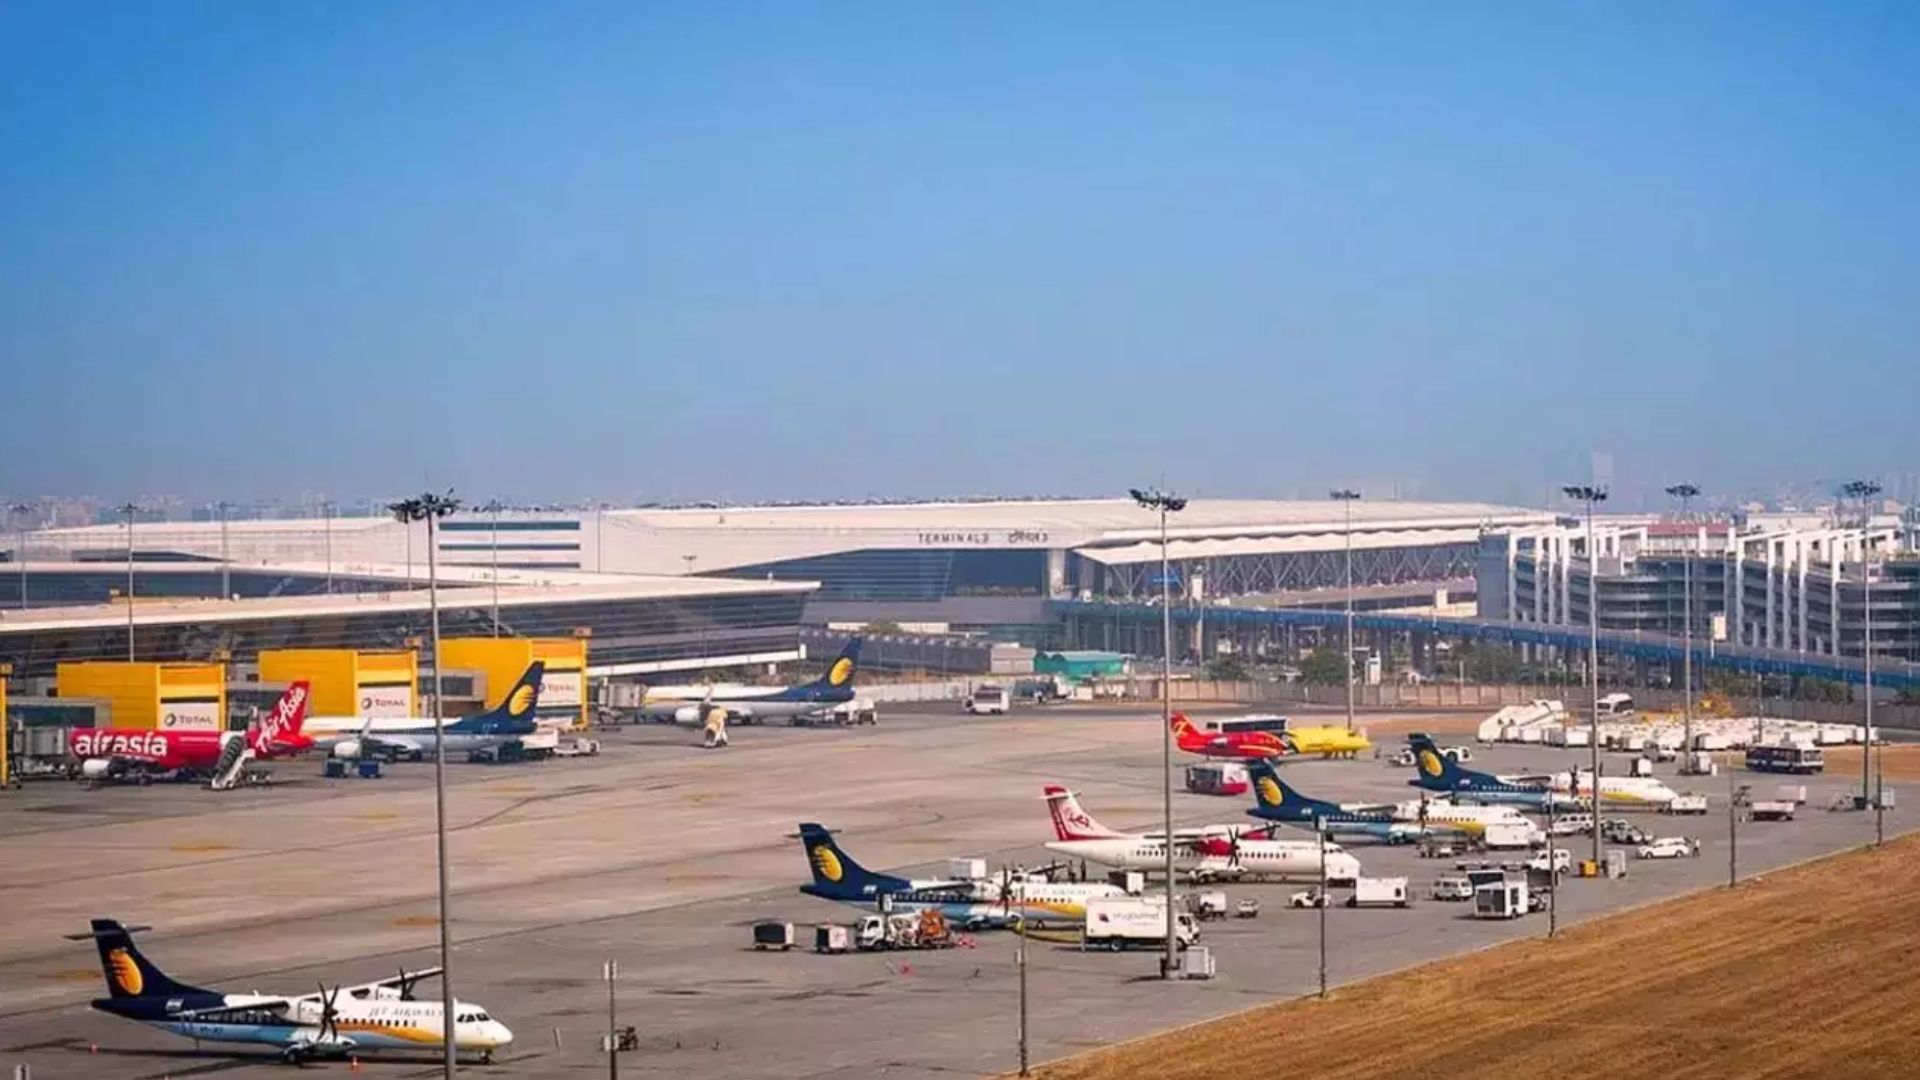 दिल्ली में हवाई अड्डे के टर्मिनल-1 पर विमानों का प्रस्थान दो बजे तक के लिए स्थगित 